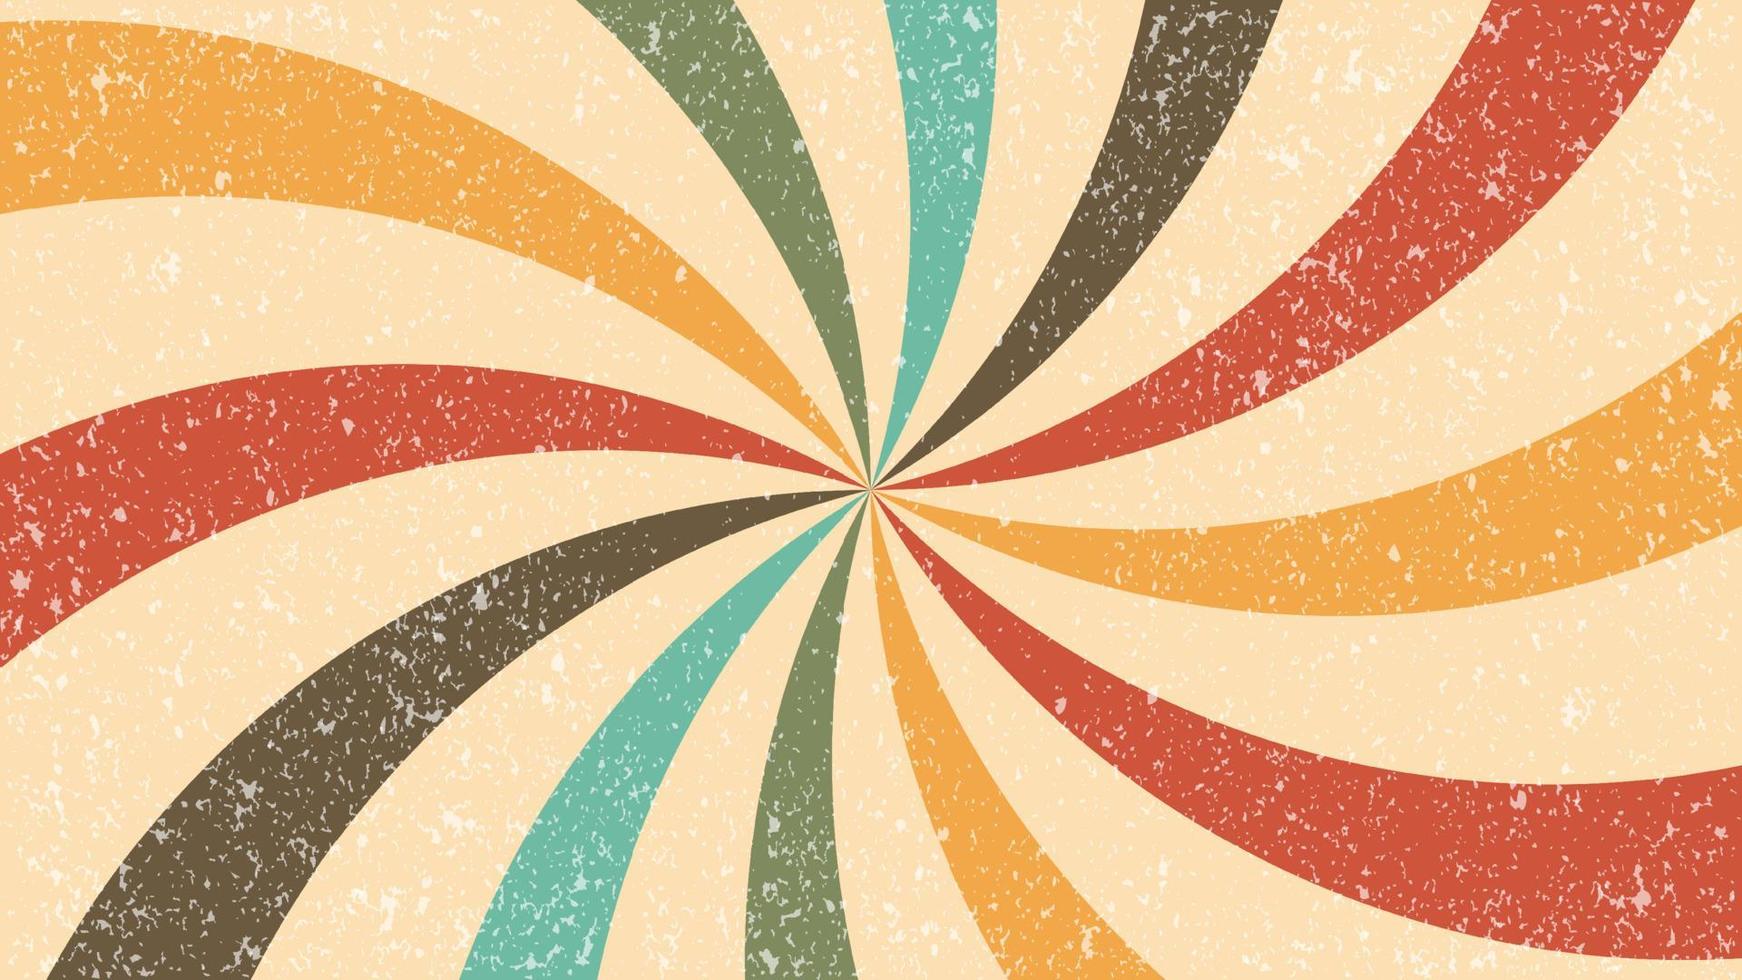 Sunburst Retro-Farben Hintergrund, Vintage-Hintergrund zum Malen von Innenabdeckungstapeten mit Grunge-Textur, abstrakter geometrischer Hintergrund vektor